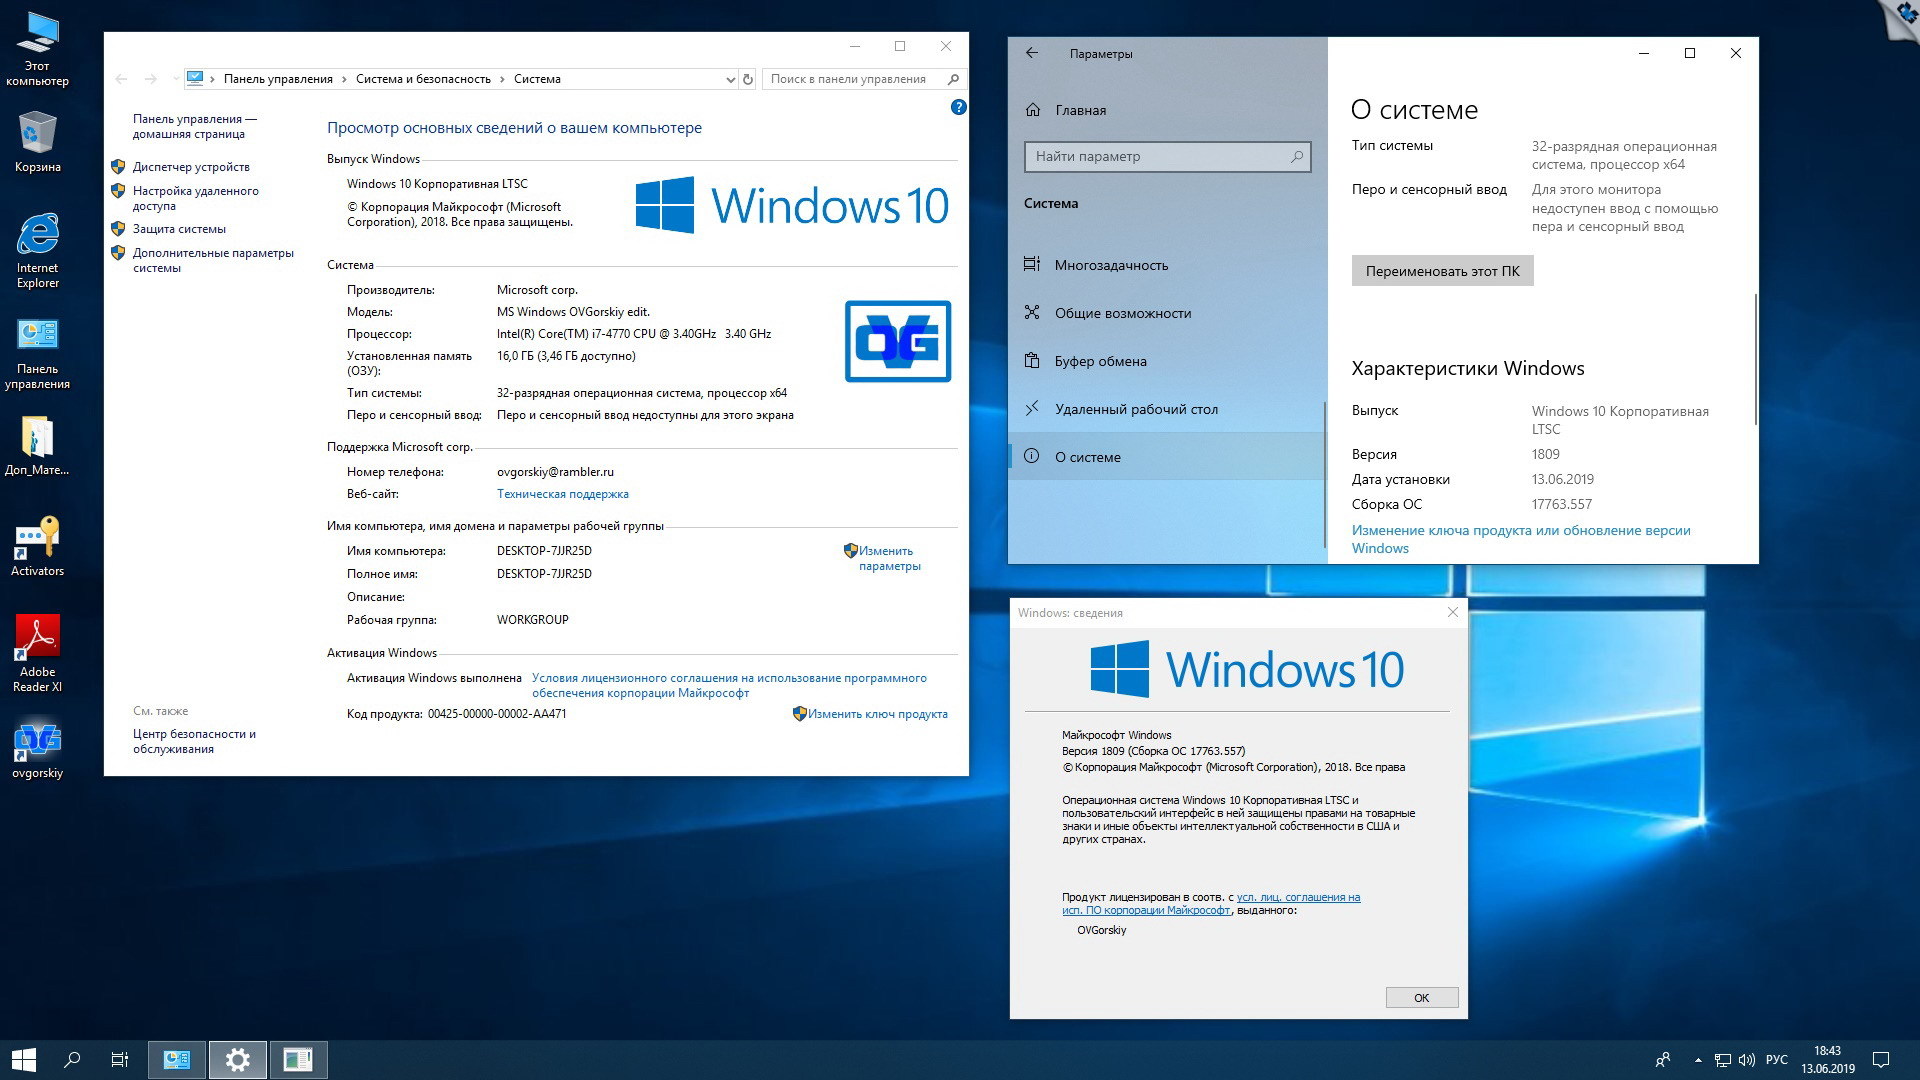 10 x64 x86 версии. Виндовс 10 Enterprise. Windows 10 корпоративная. Windows 10 Enterprise (корпоративная). Виндовс 10 LTSC.